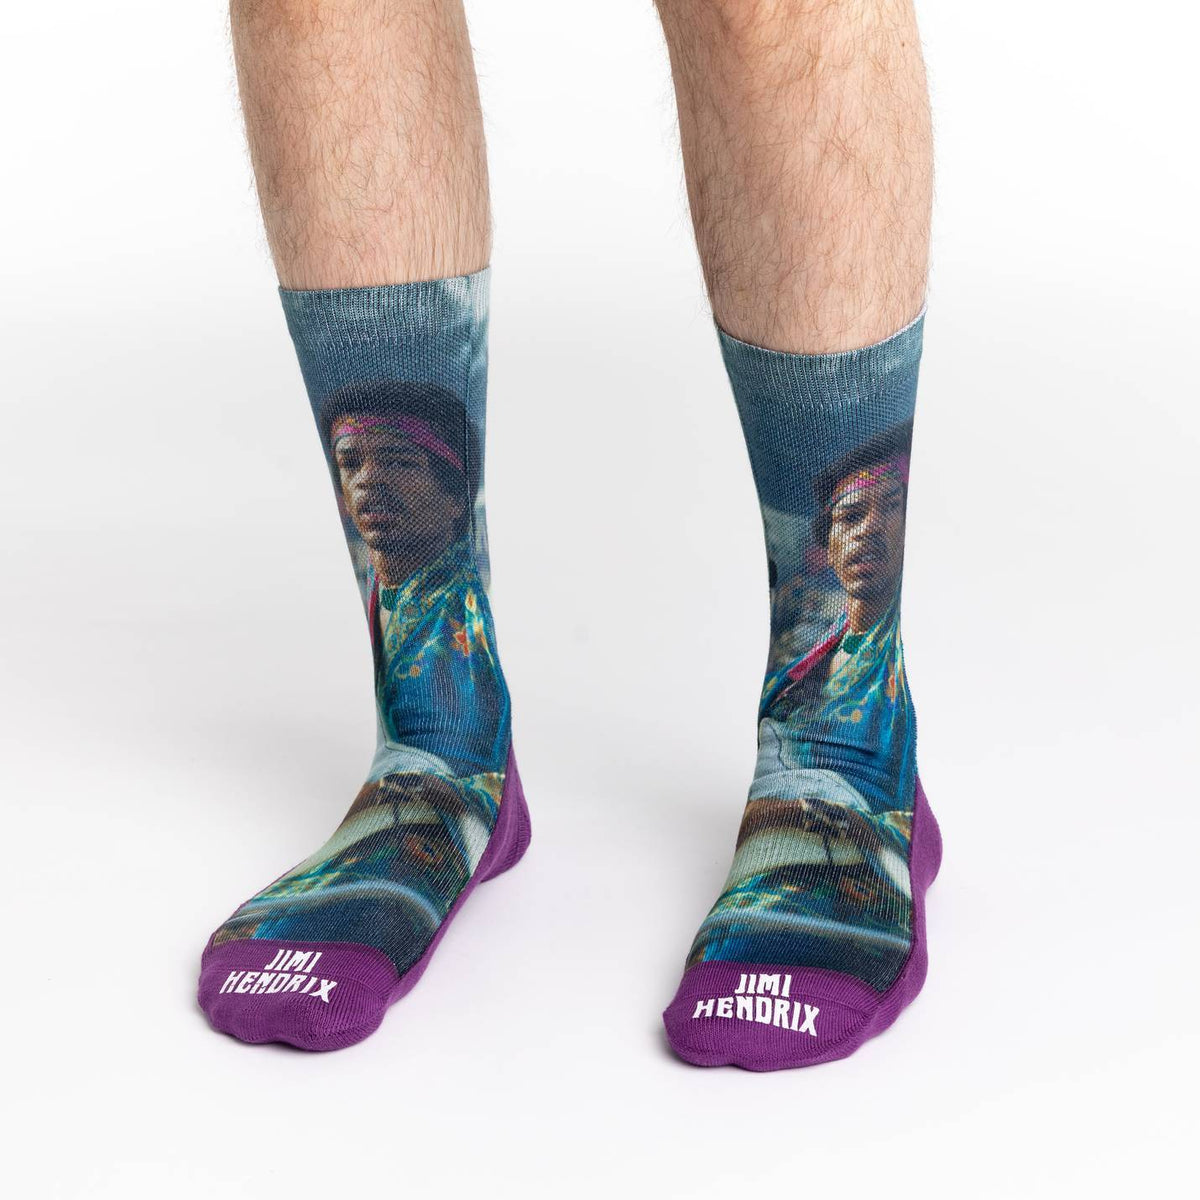 Men's Jimi Hendrix, Concert Socks